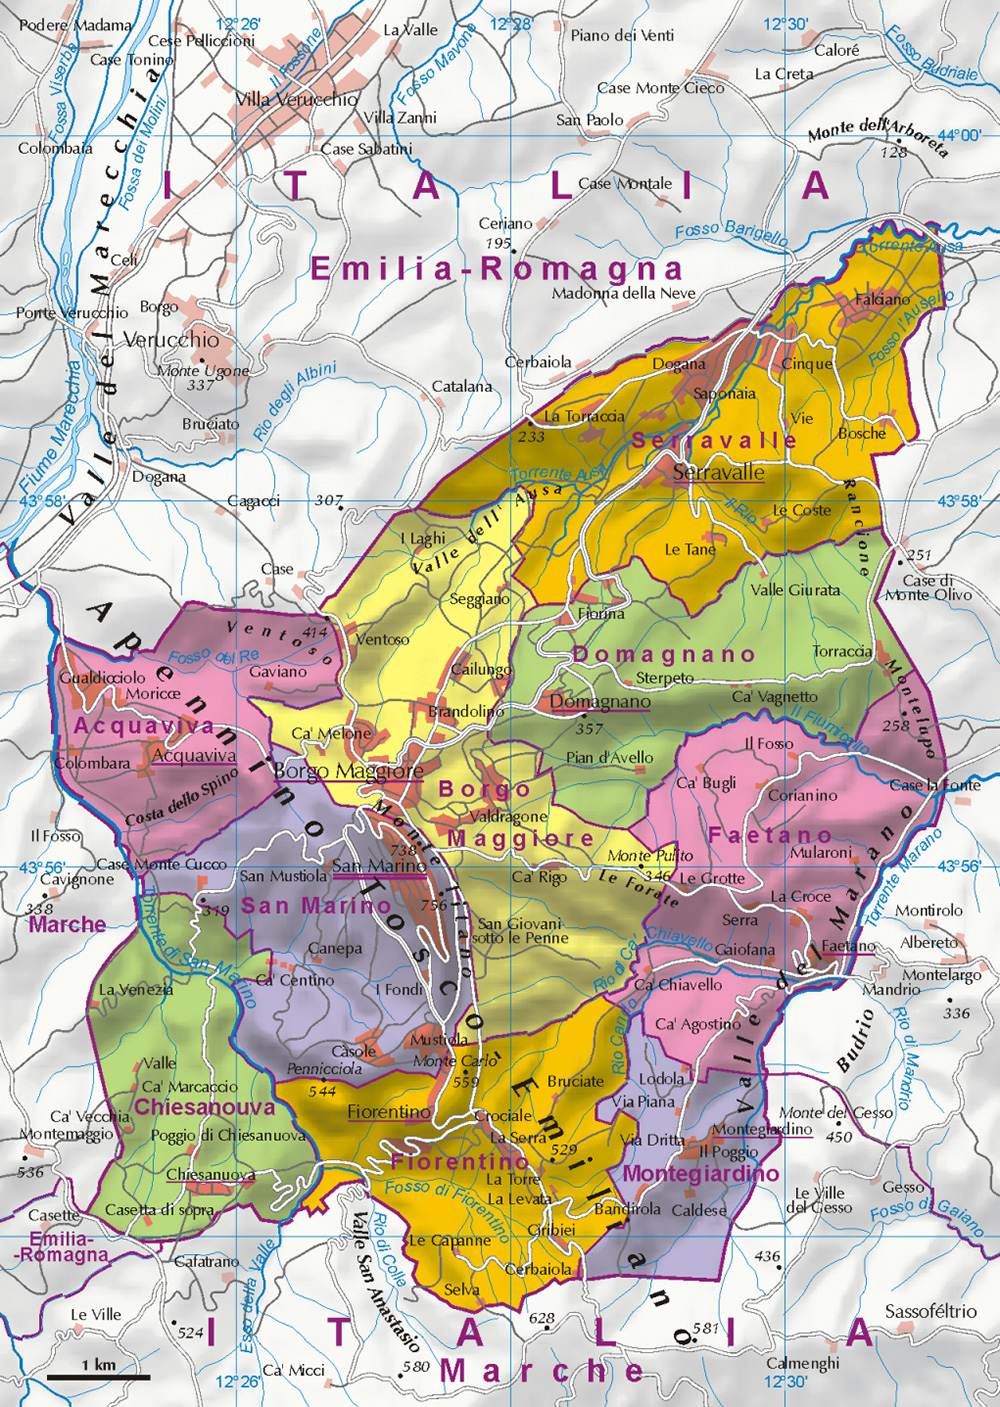 Mappa dettagliata regioni San Marino